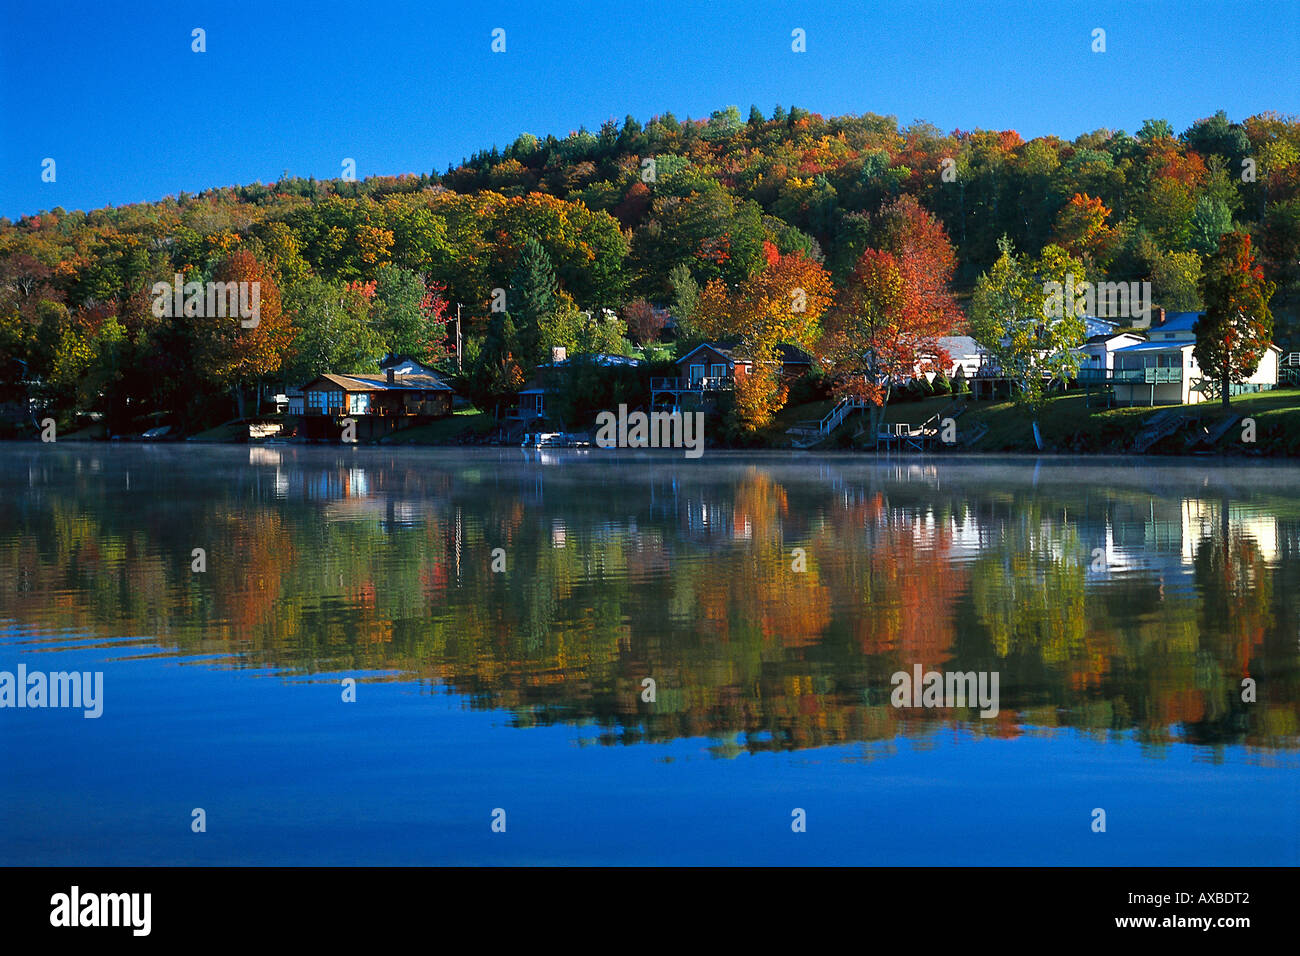 Lake Elmor near Stowe, Vermont USA Stock Photo